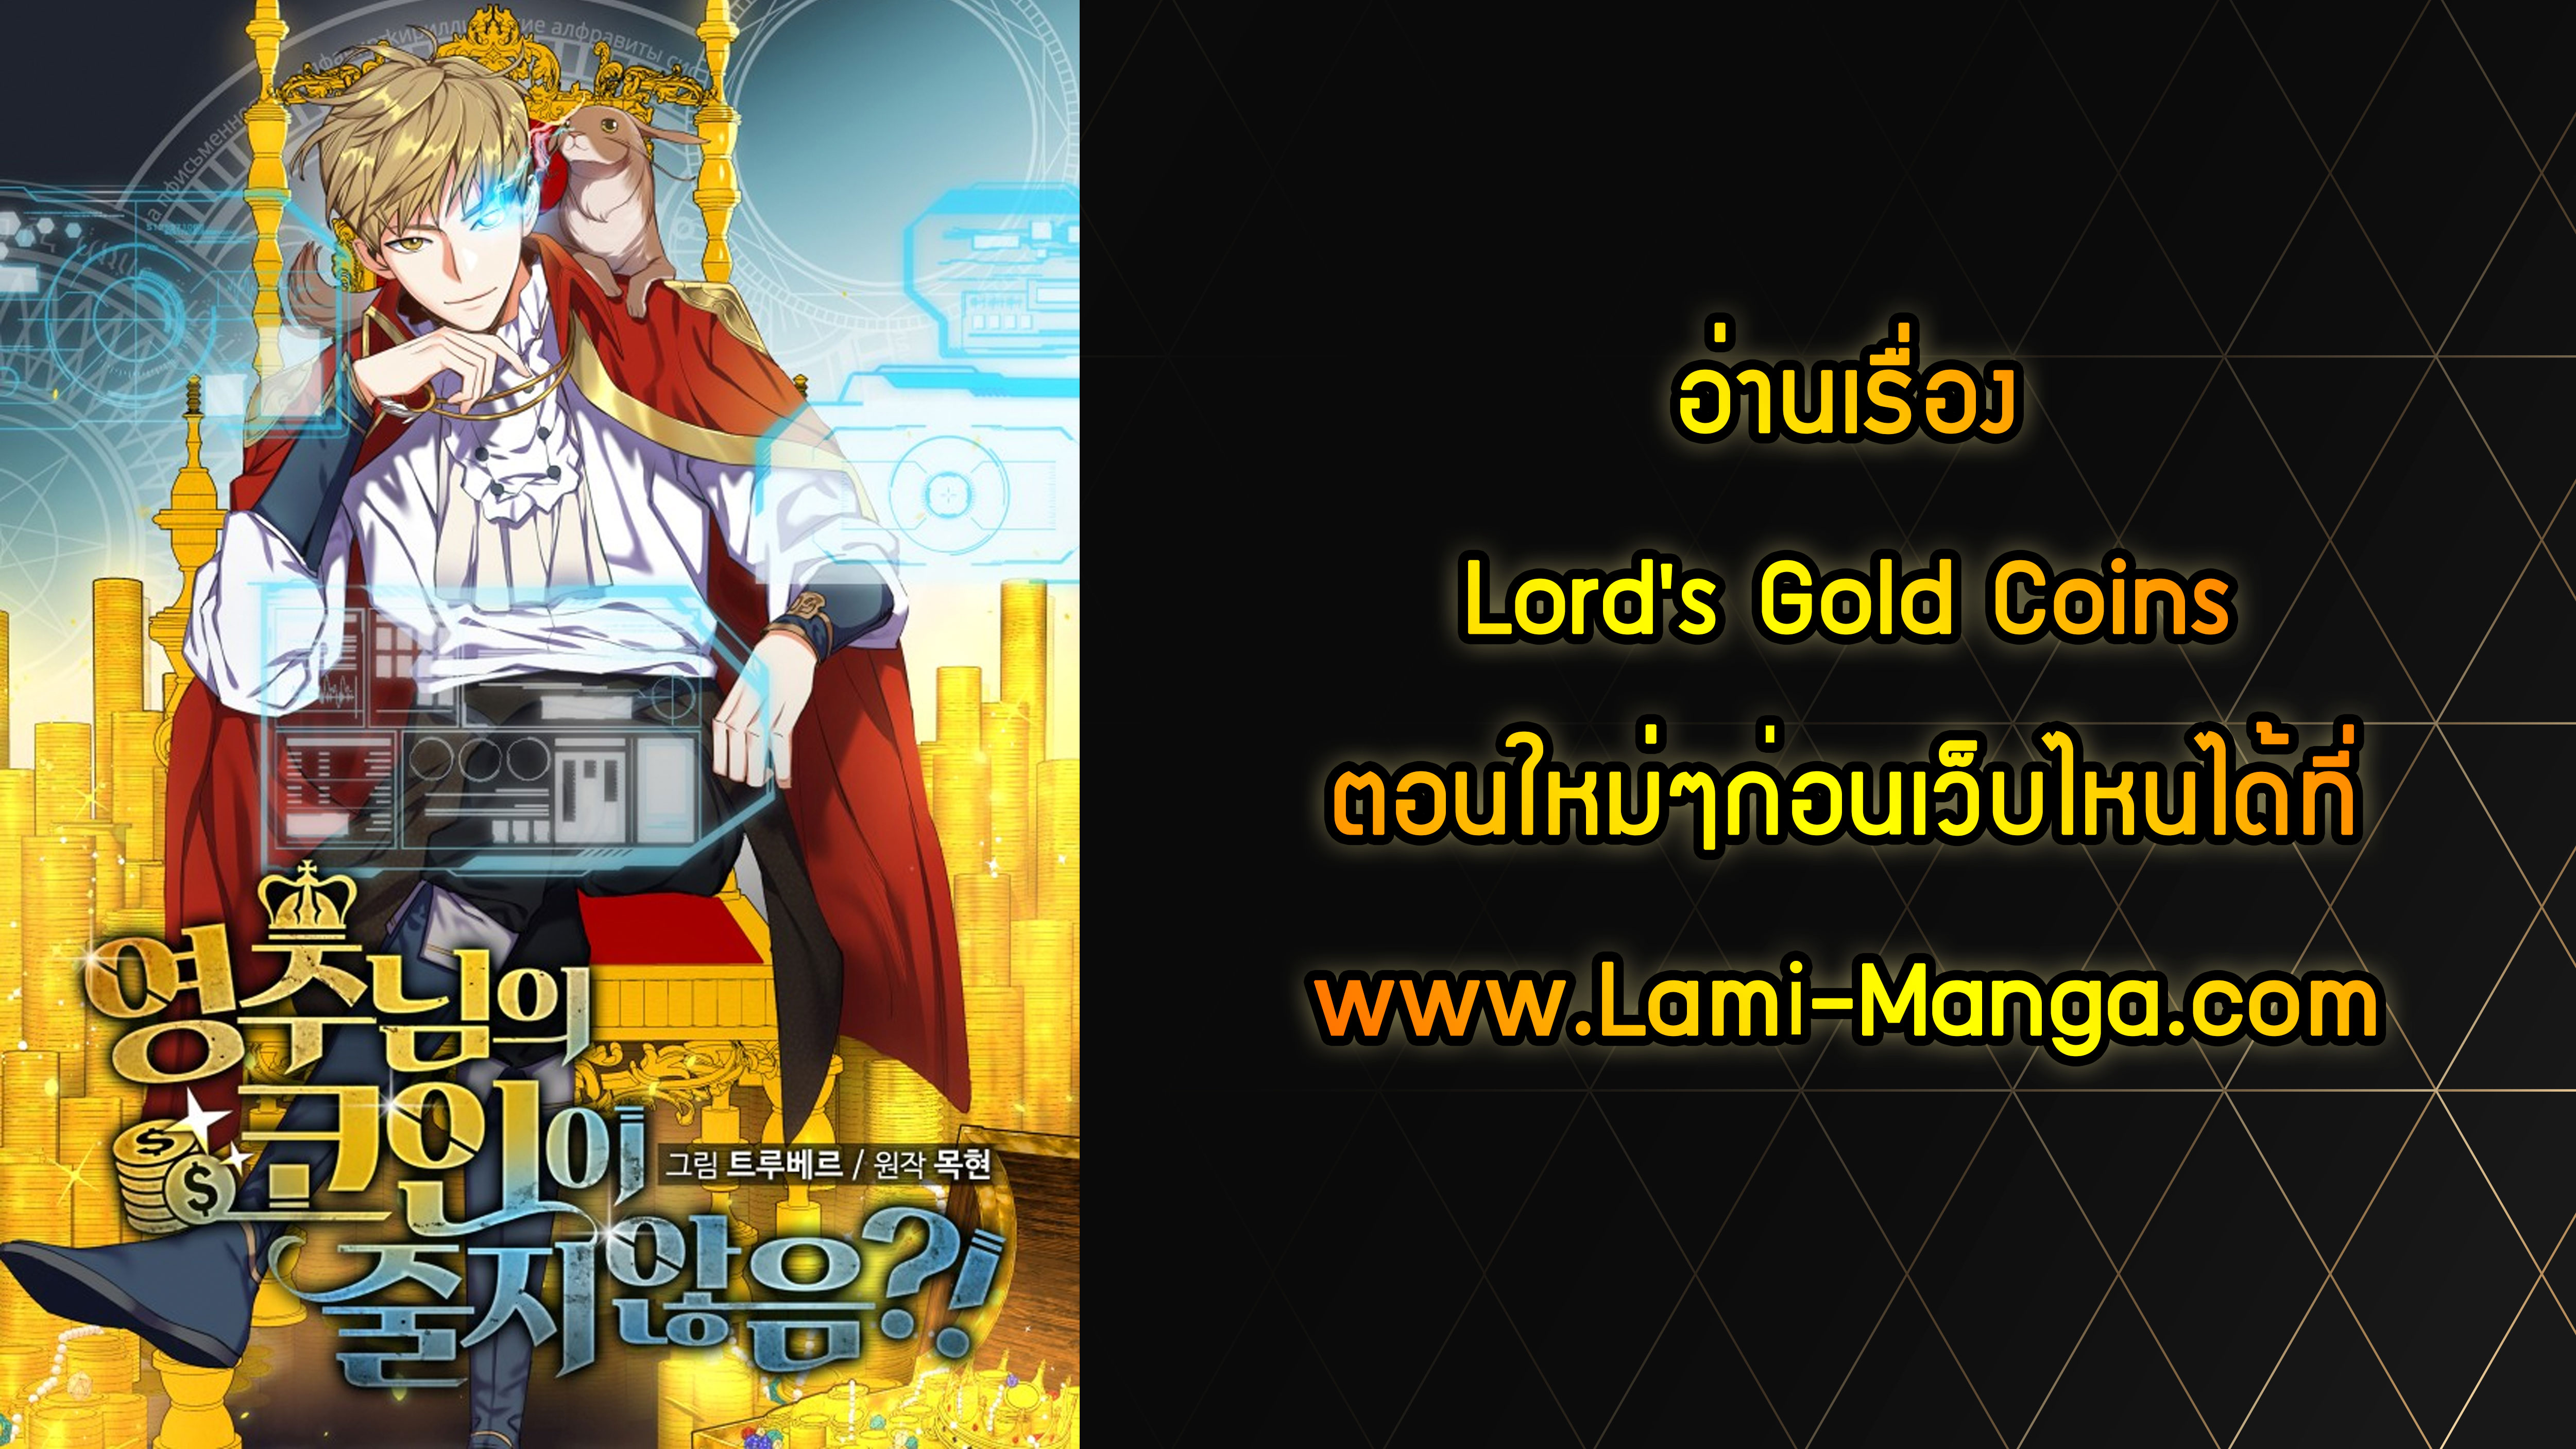 Lordโ€s Gold Coins 14 09